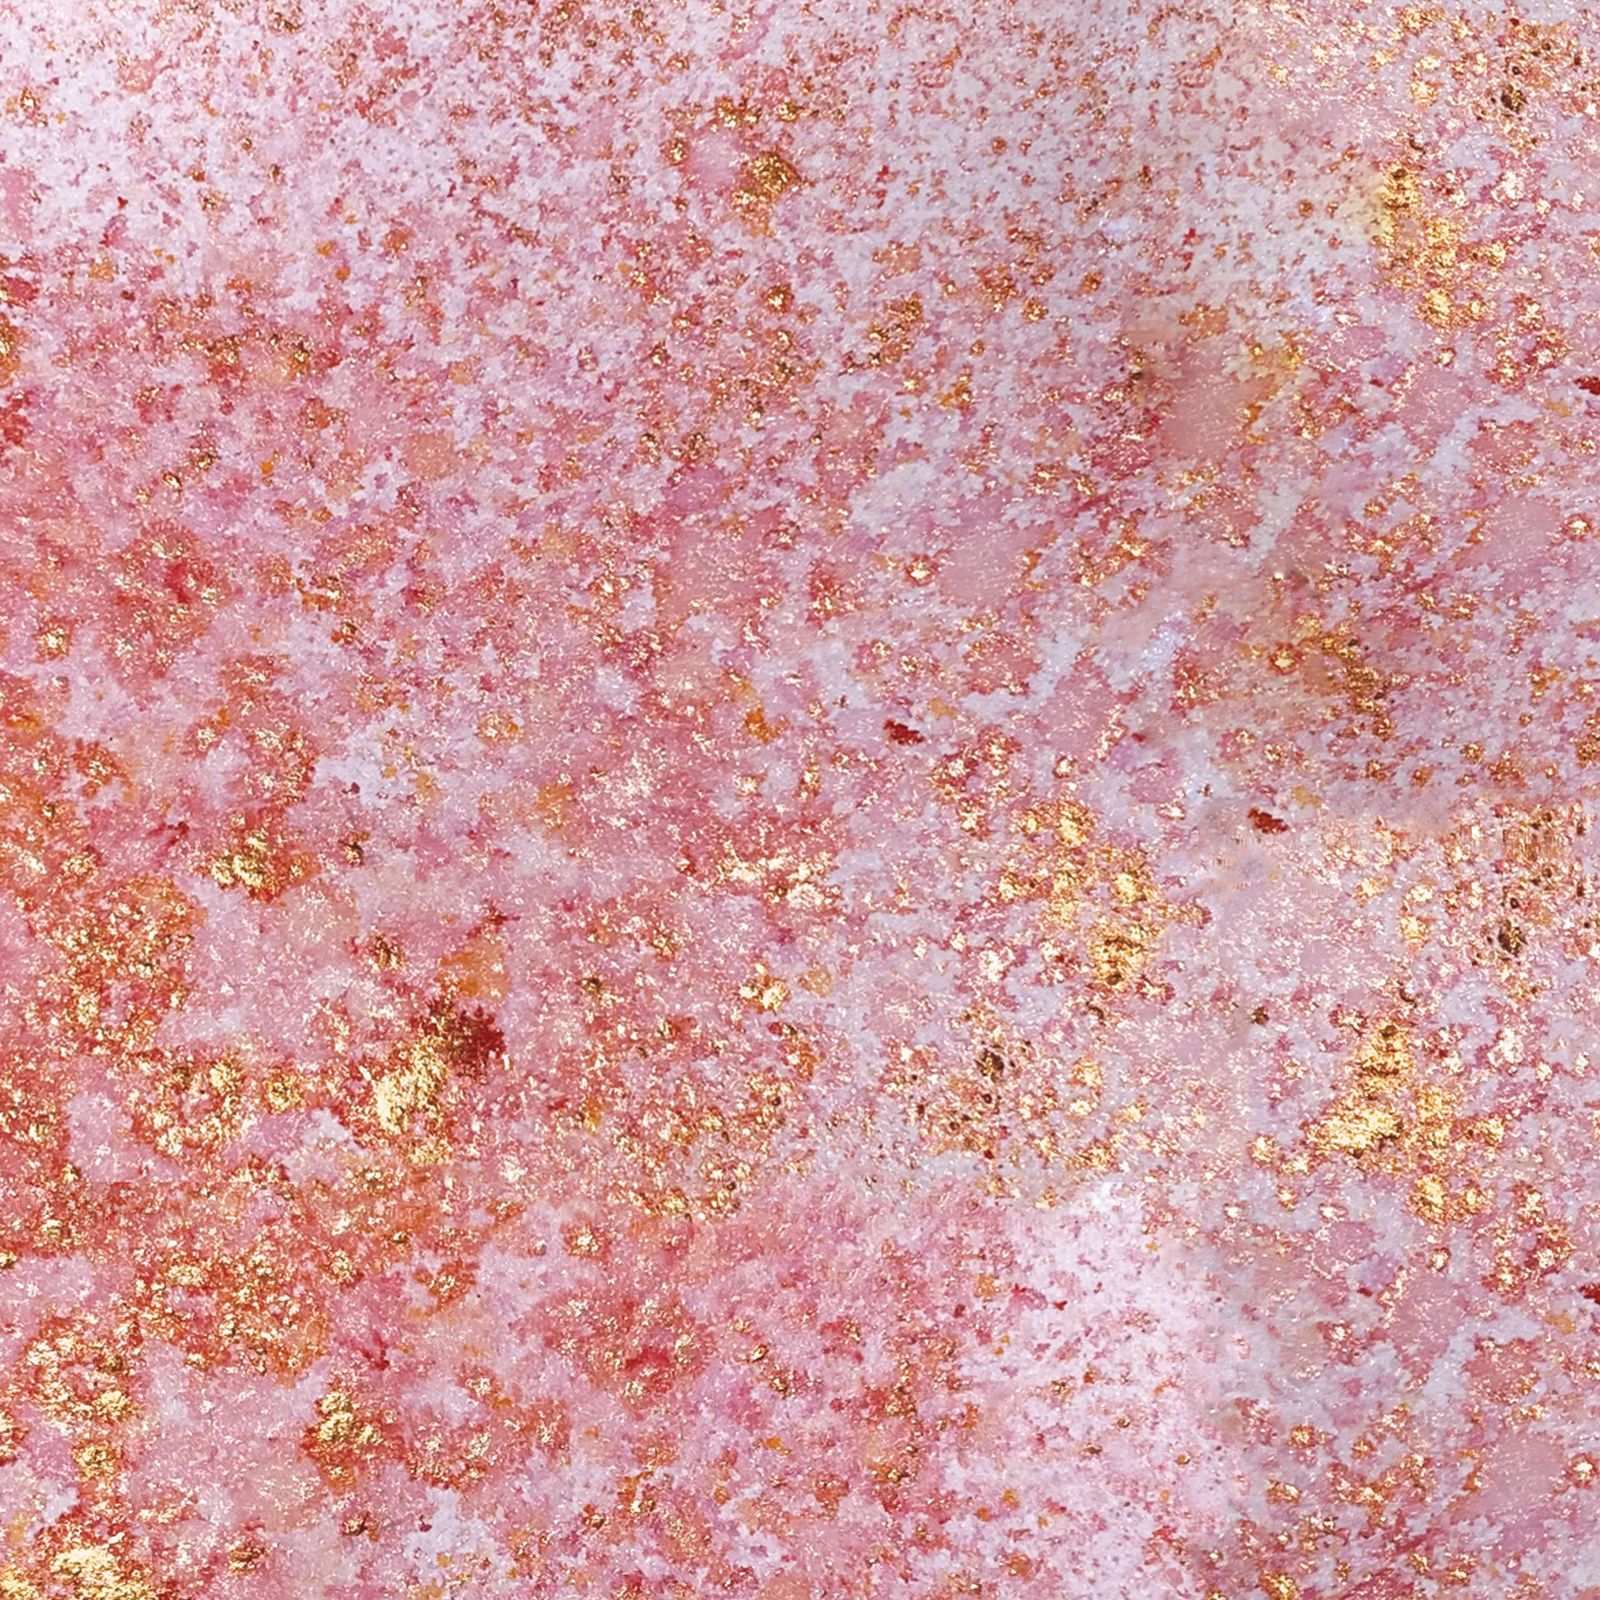 Cosmic Shimmer • Pixie sparkles Béguin coral